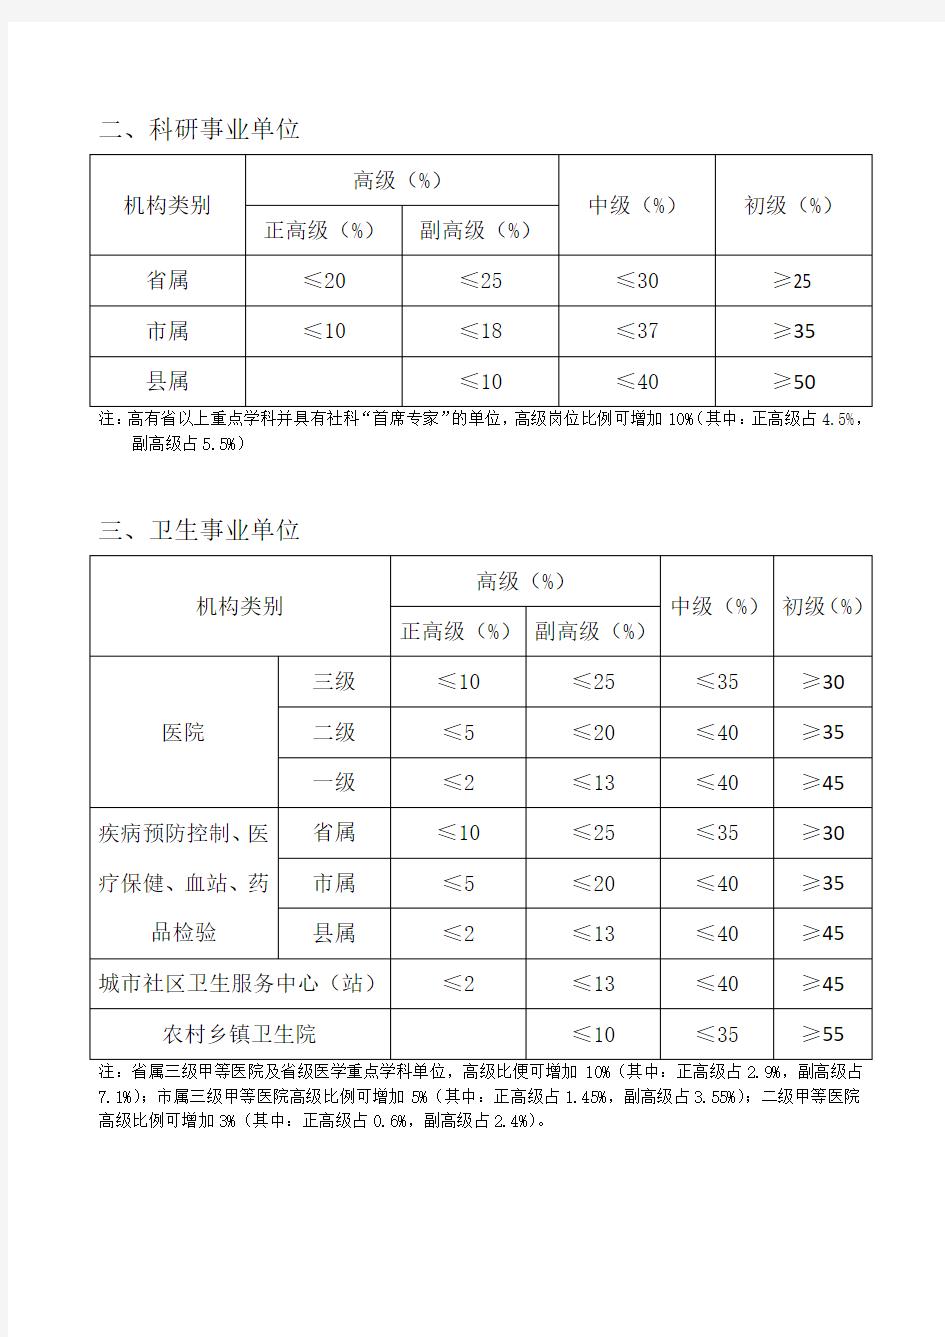 河北省事业单位专业技术高级中级初级岗位结构比例控制标准